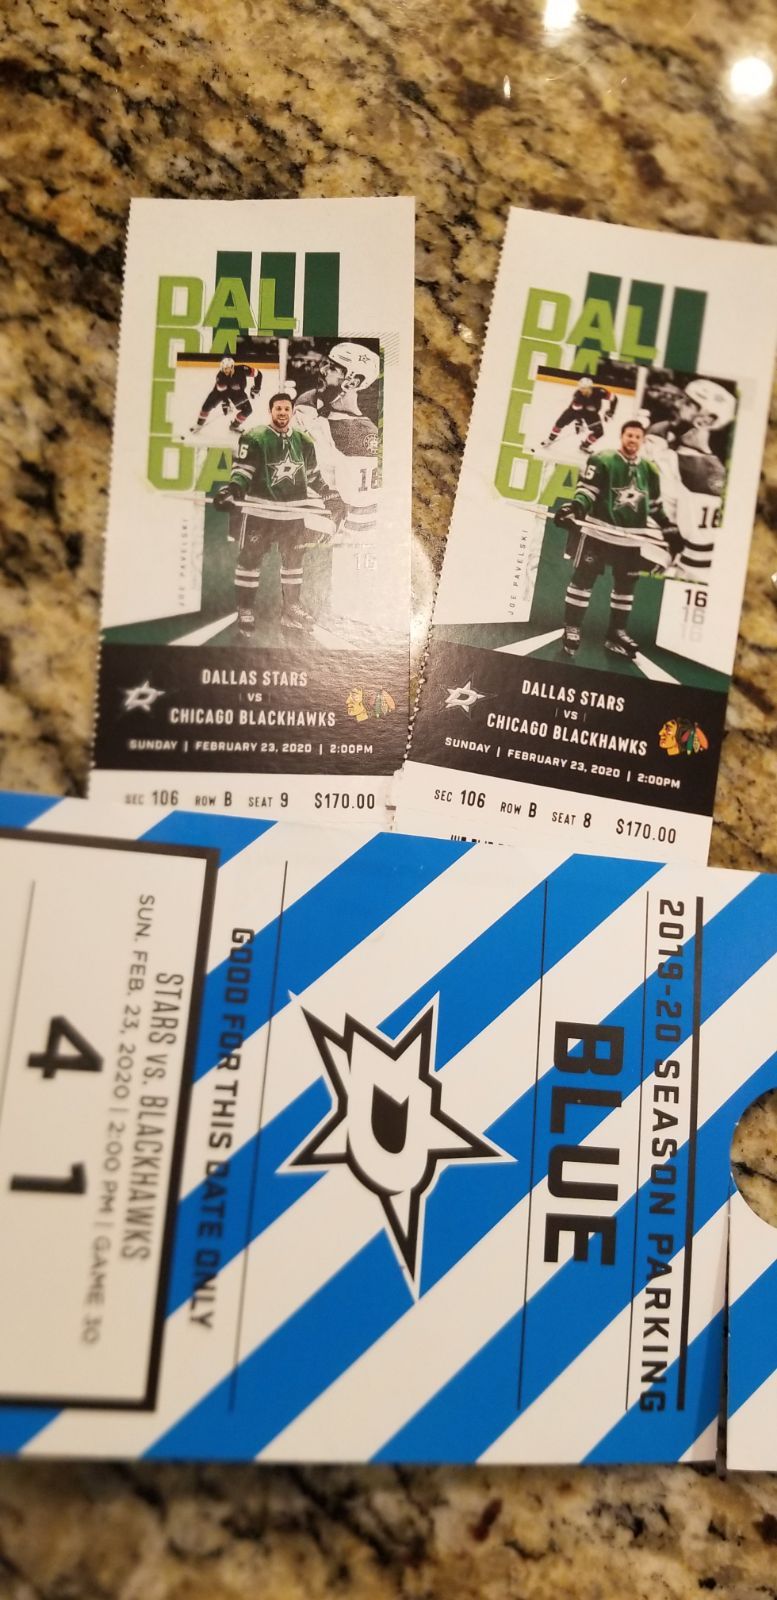 Dallas stars tickets